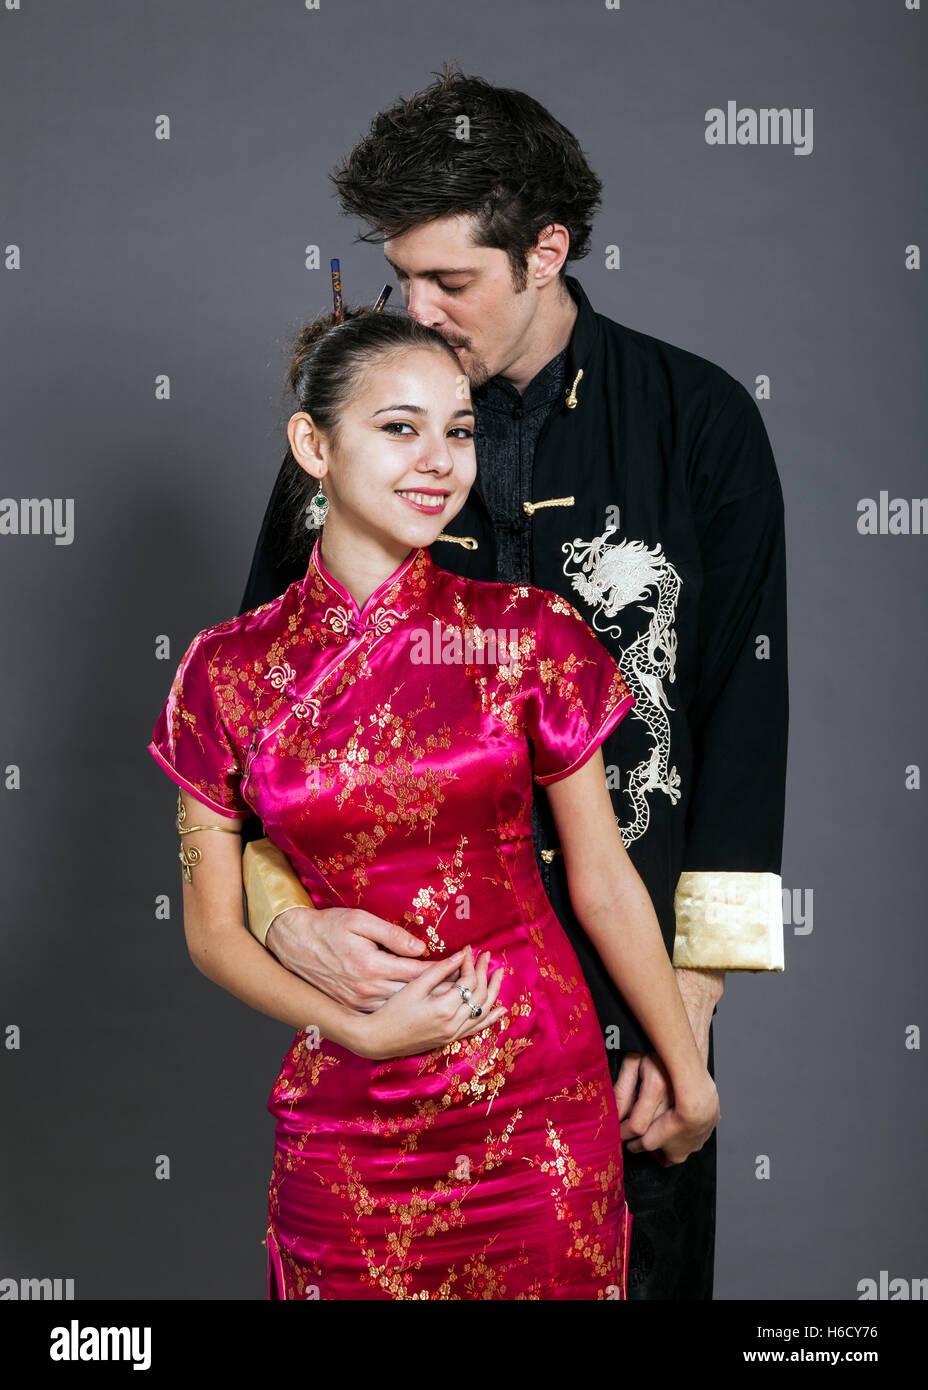 Studio shot di un giovane nei loro primi anni venti, indossando il tradizionale abbigliamento cinese ed essendo generalmente molto carino insieme. Foto Stock